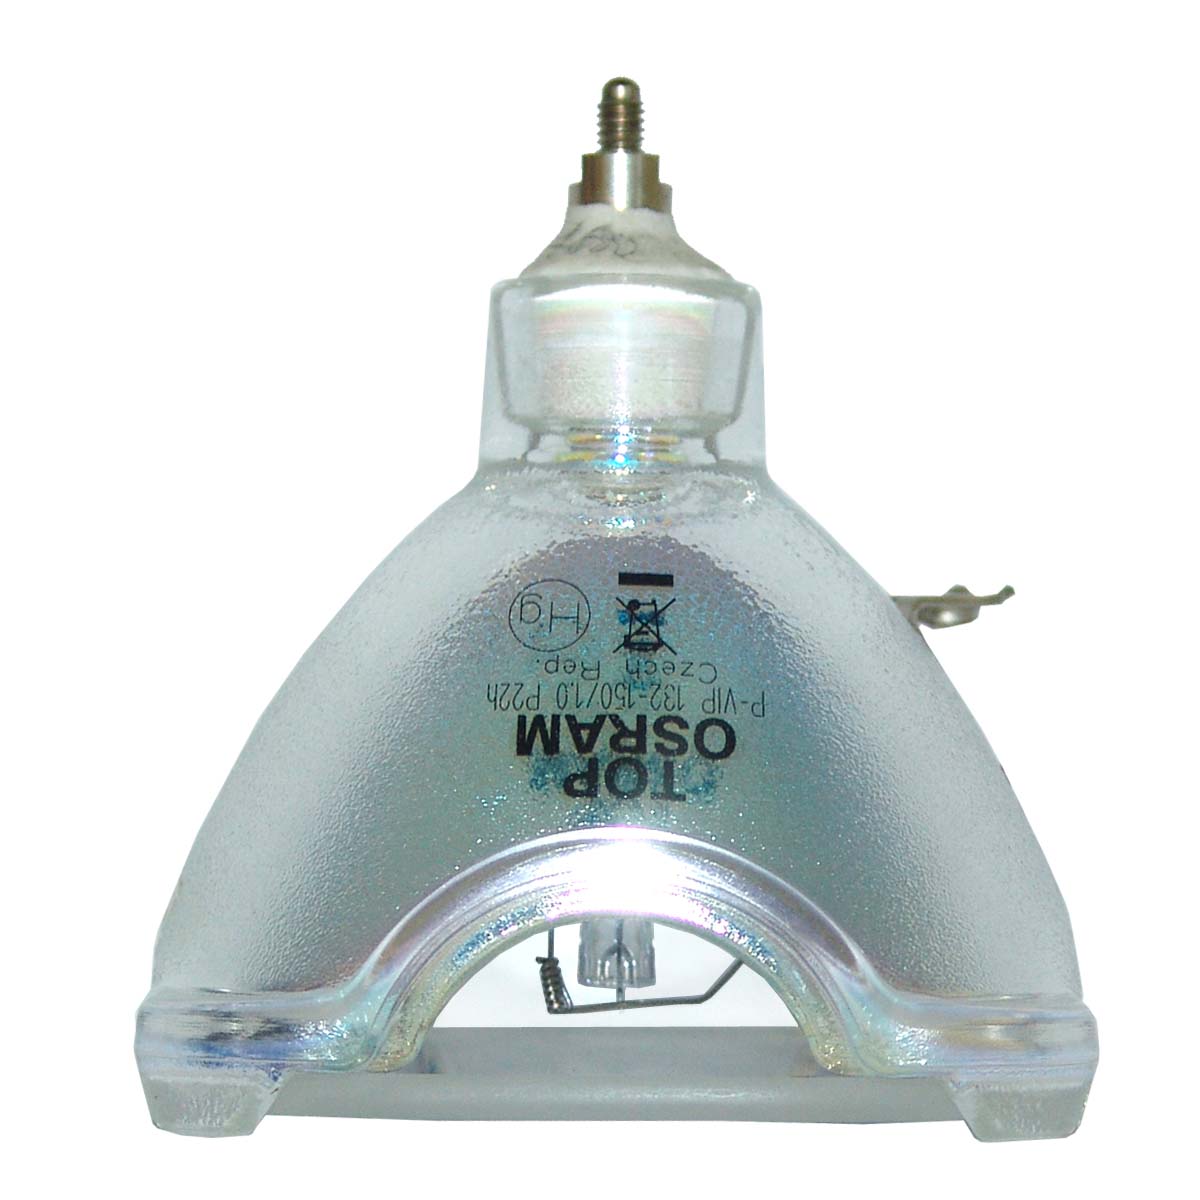 Apollo VP 835-LAMP Osram Projector Bare Lamp